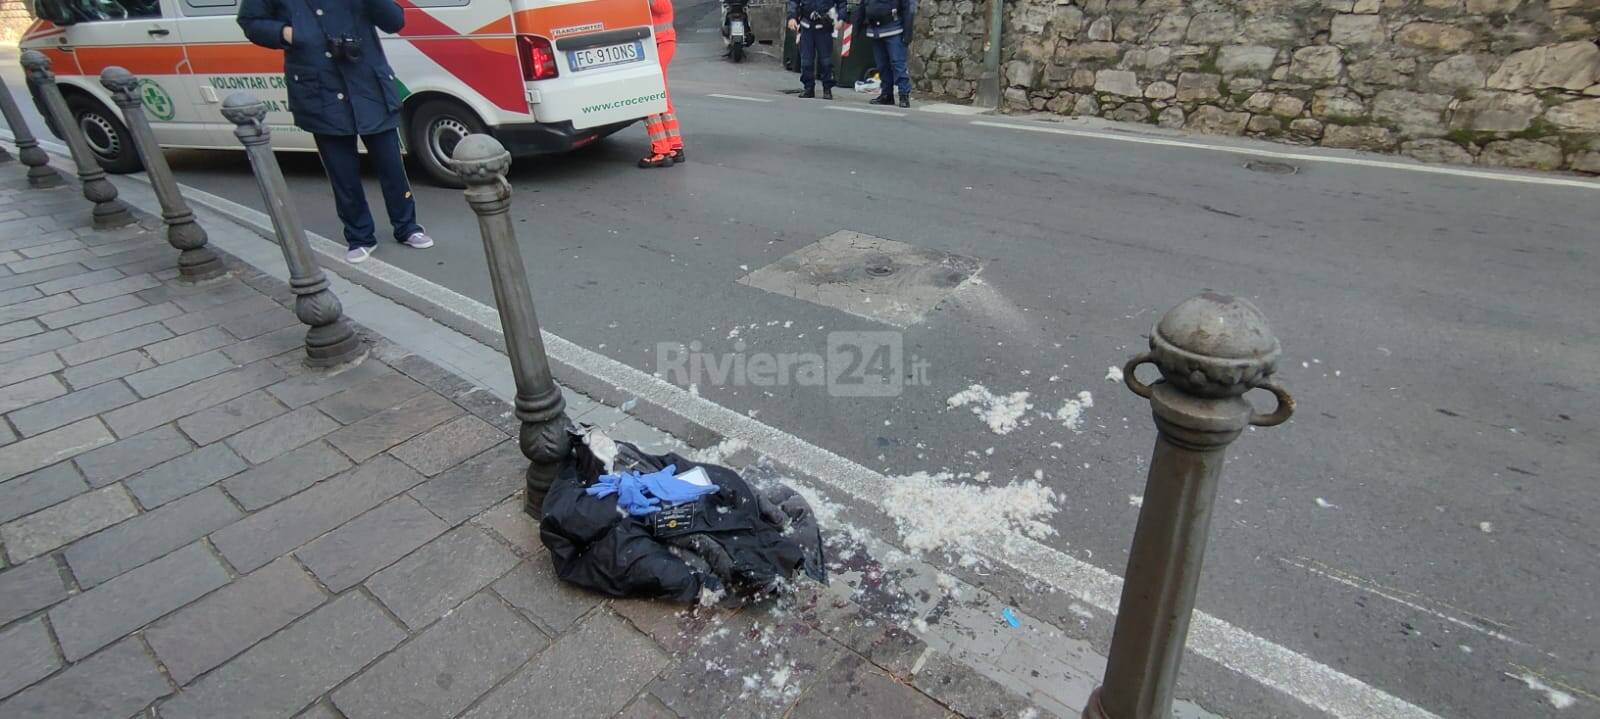 Incidente a Sanremo